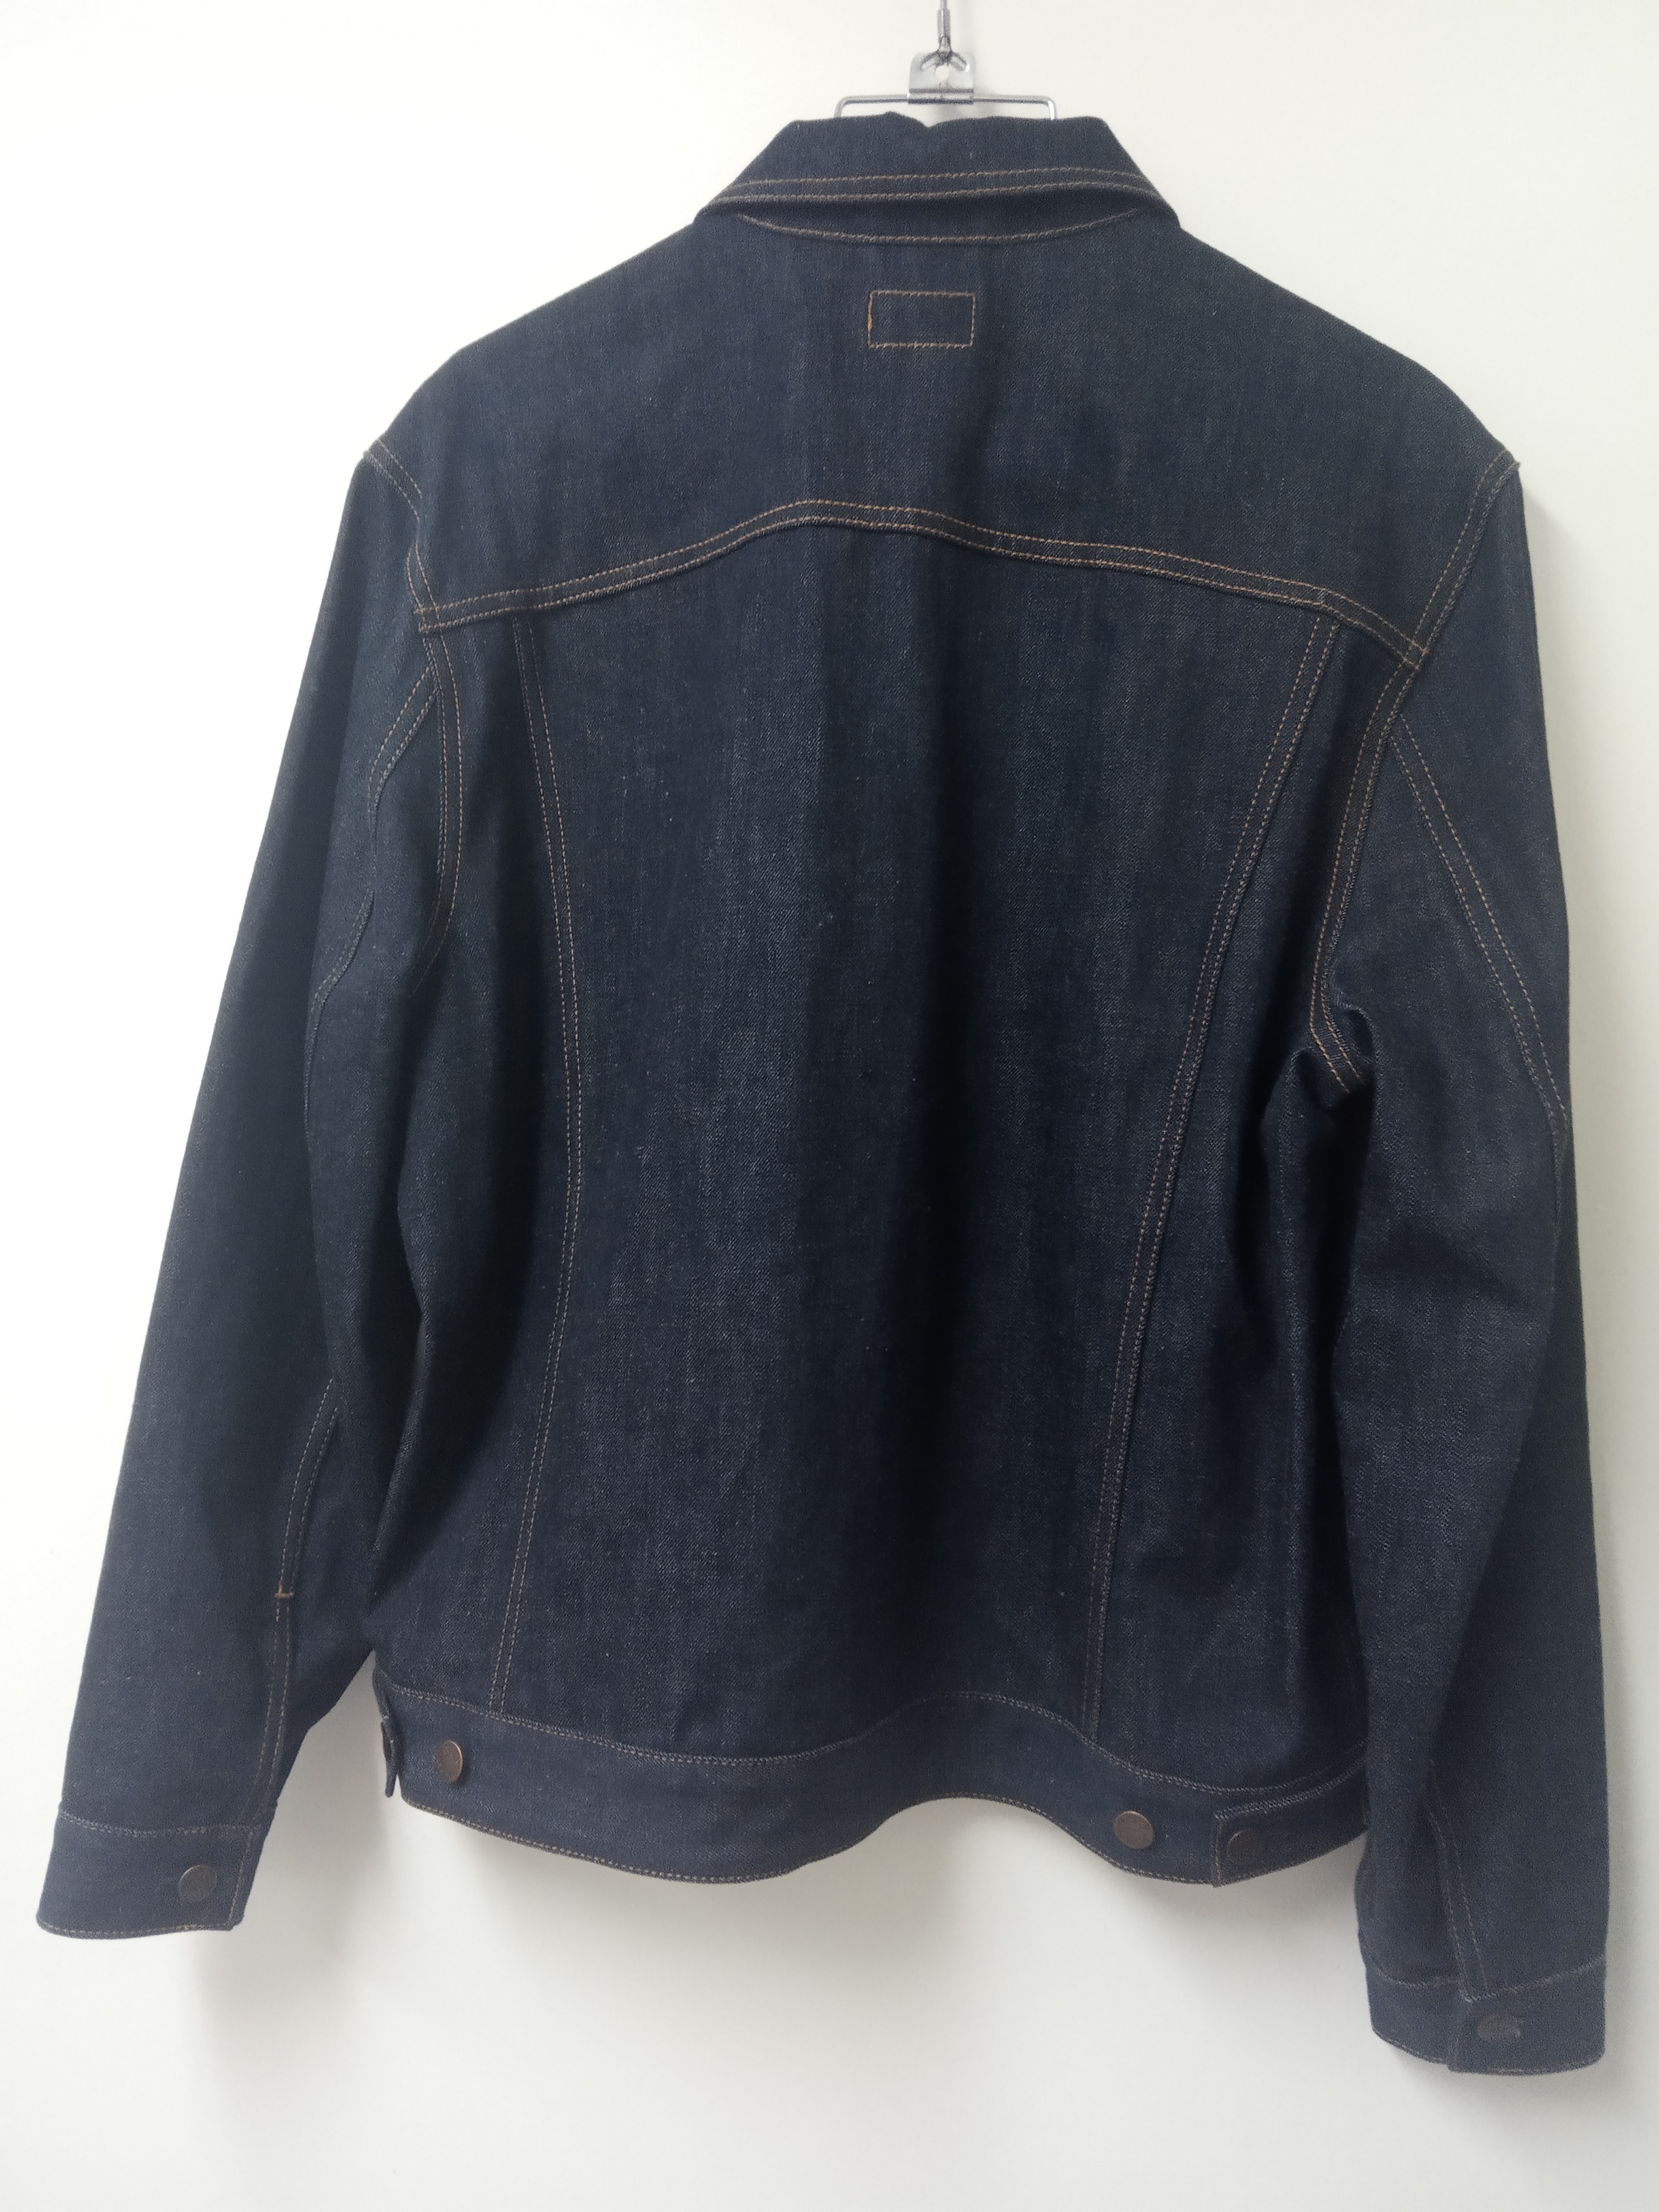 תמונה 2 ,ג'קט ג'ינס נודי למכירה בתל אביב ביגוד ואביזרים  מעילים וג'קטים